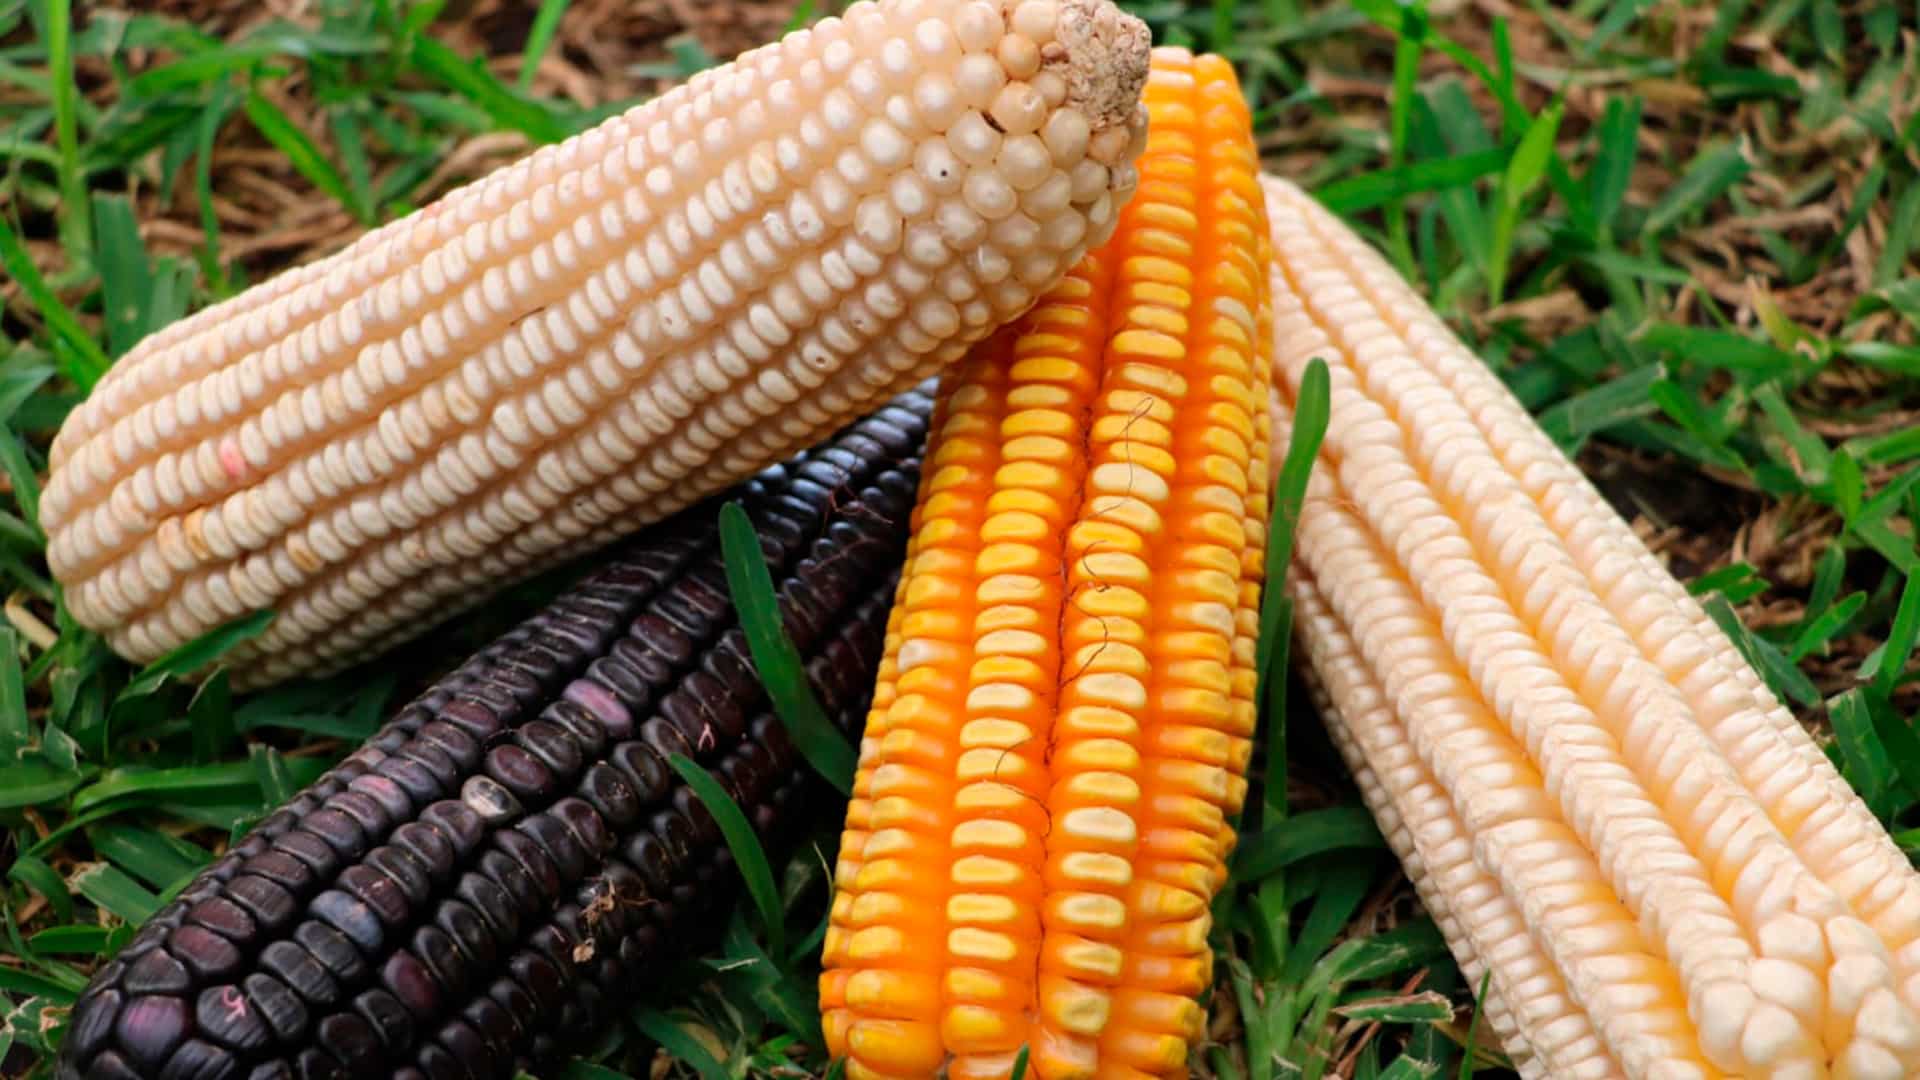 Se abrieron consultas del T-MEC por prohibición de importaciones de maíz transgénico.